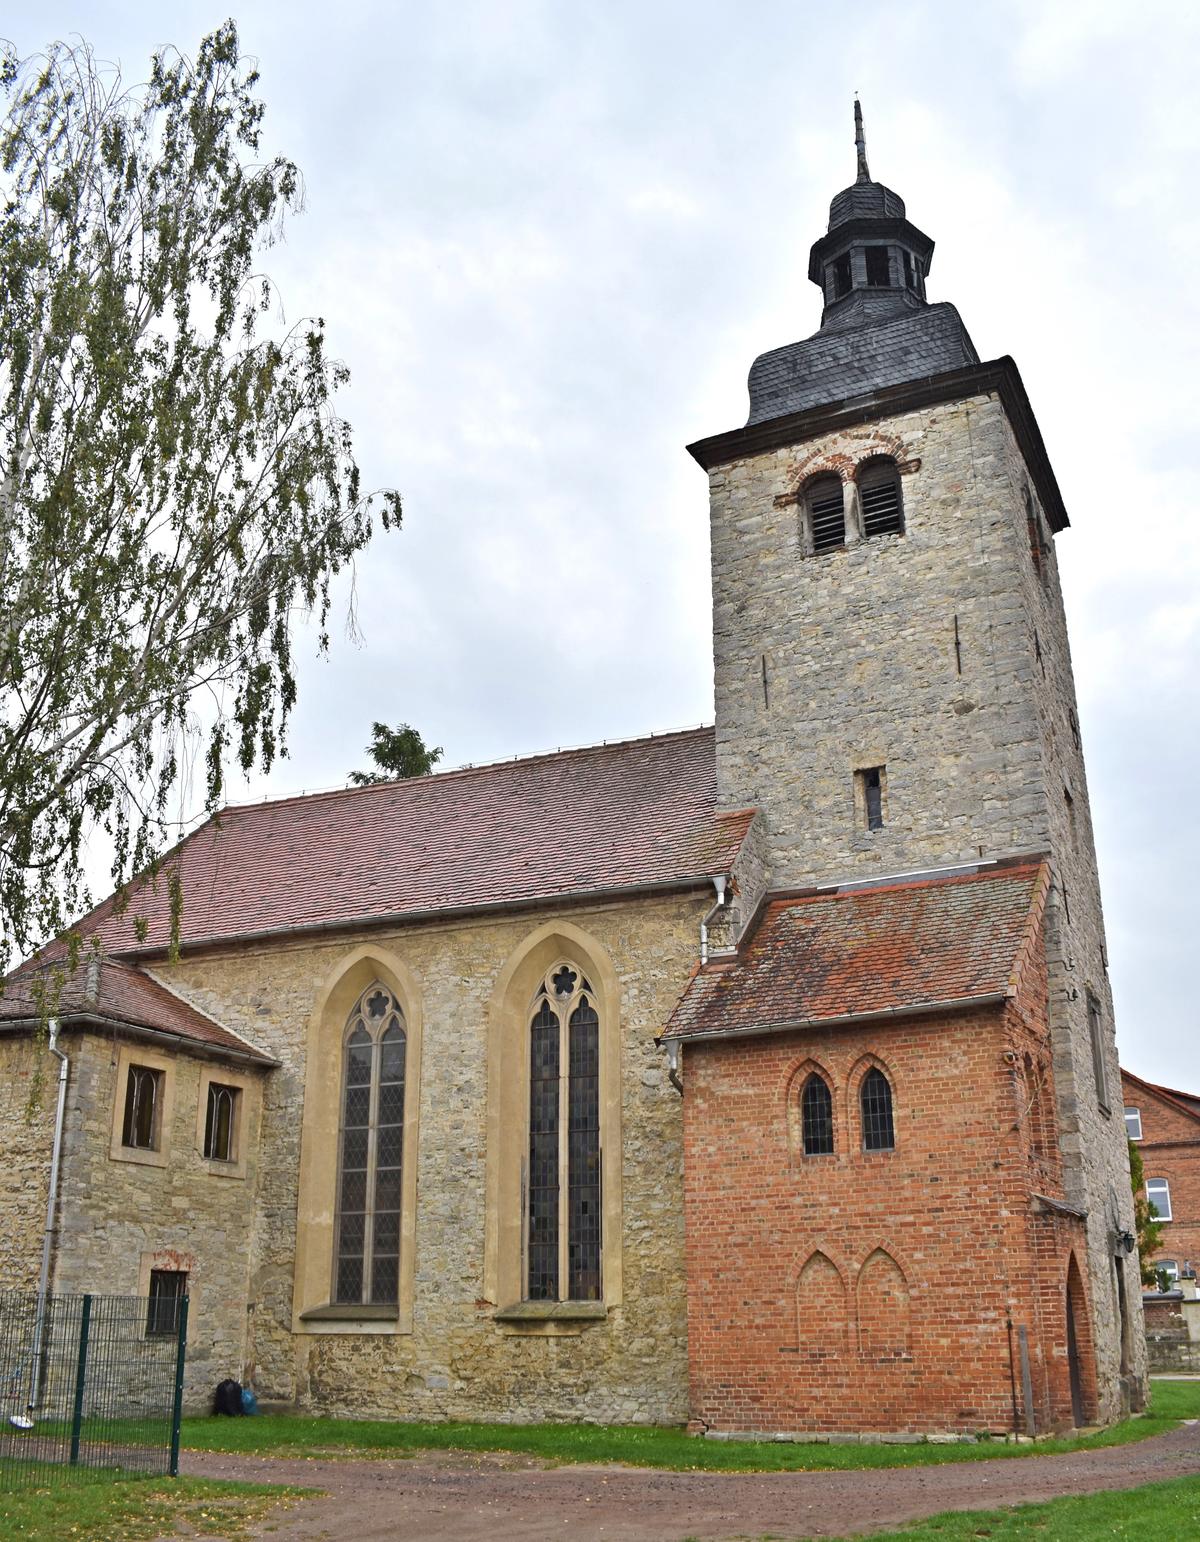 Die Nordseite der Krottorfer Kirche Sankt Severus. Auffällig die großen Fenster, die 1836 bei Umbauarbeiten um fast zwei Meter verlängert worden sind und einen gotischen Spitzbogen bekommen haben.